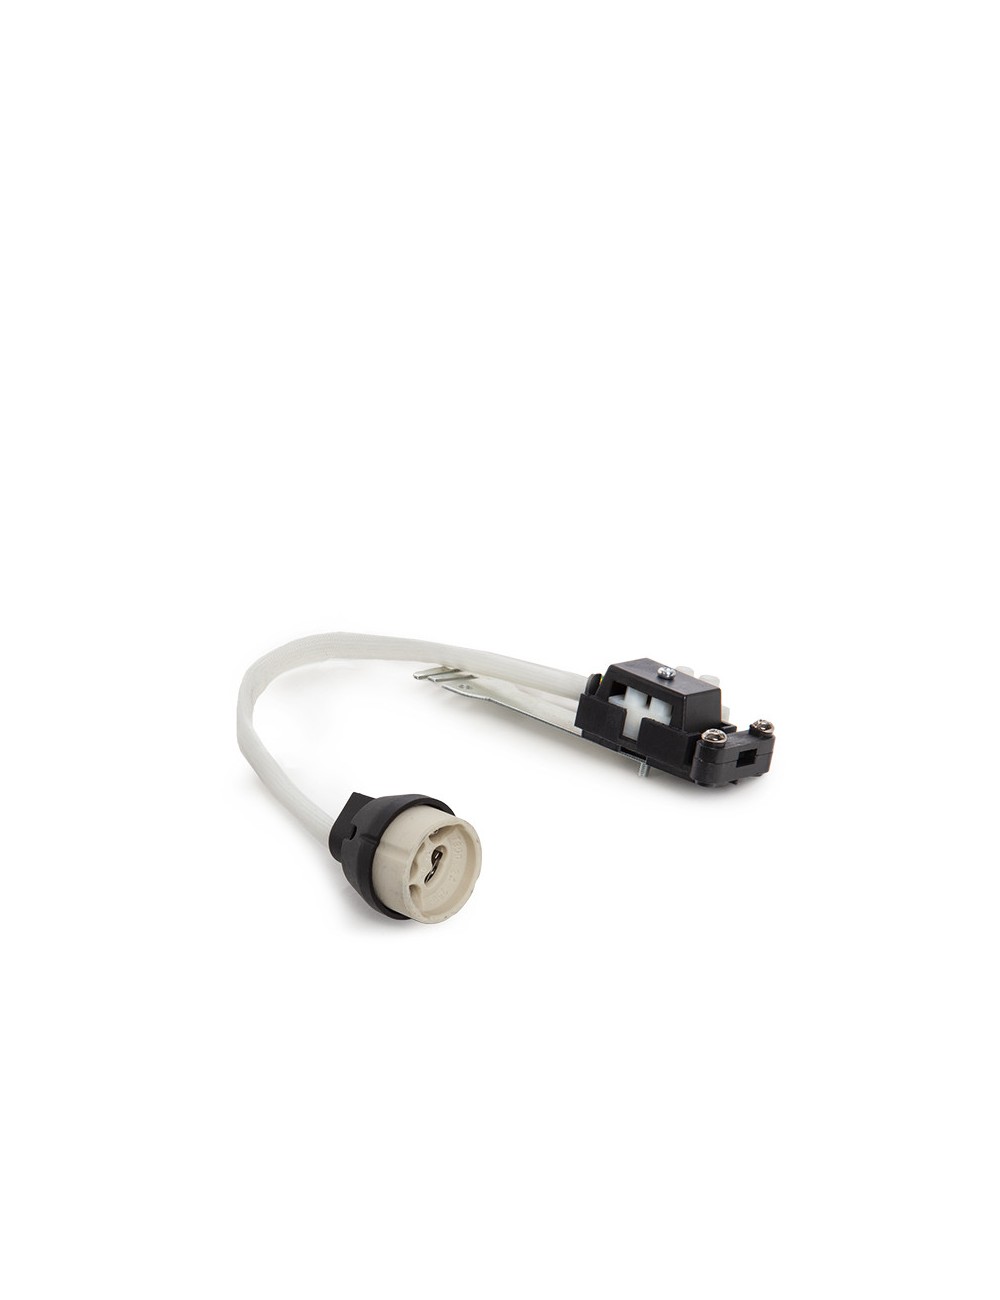 Jouer Support de Lampe Céramique GU10 Connecteur/Câbles 160Mm 180ºc